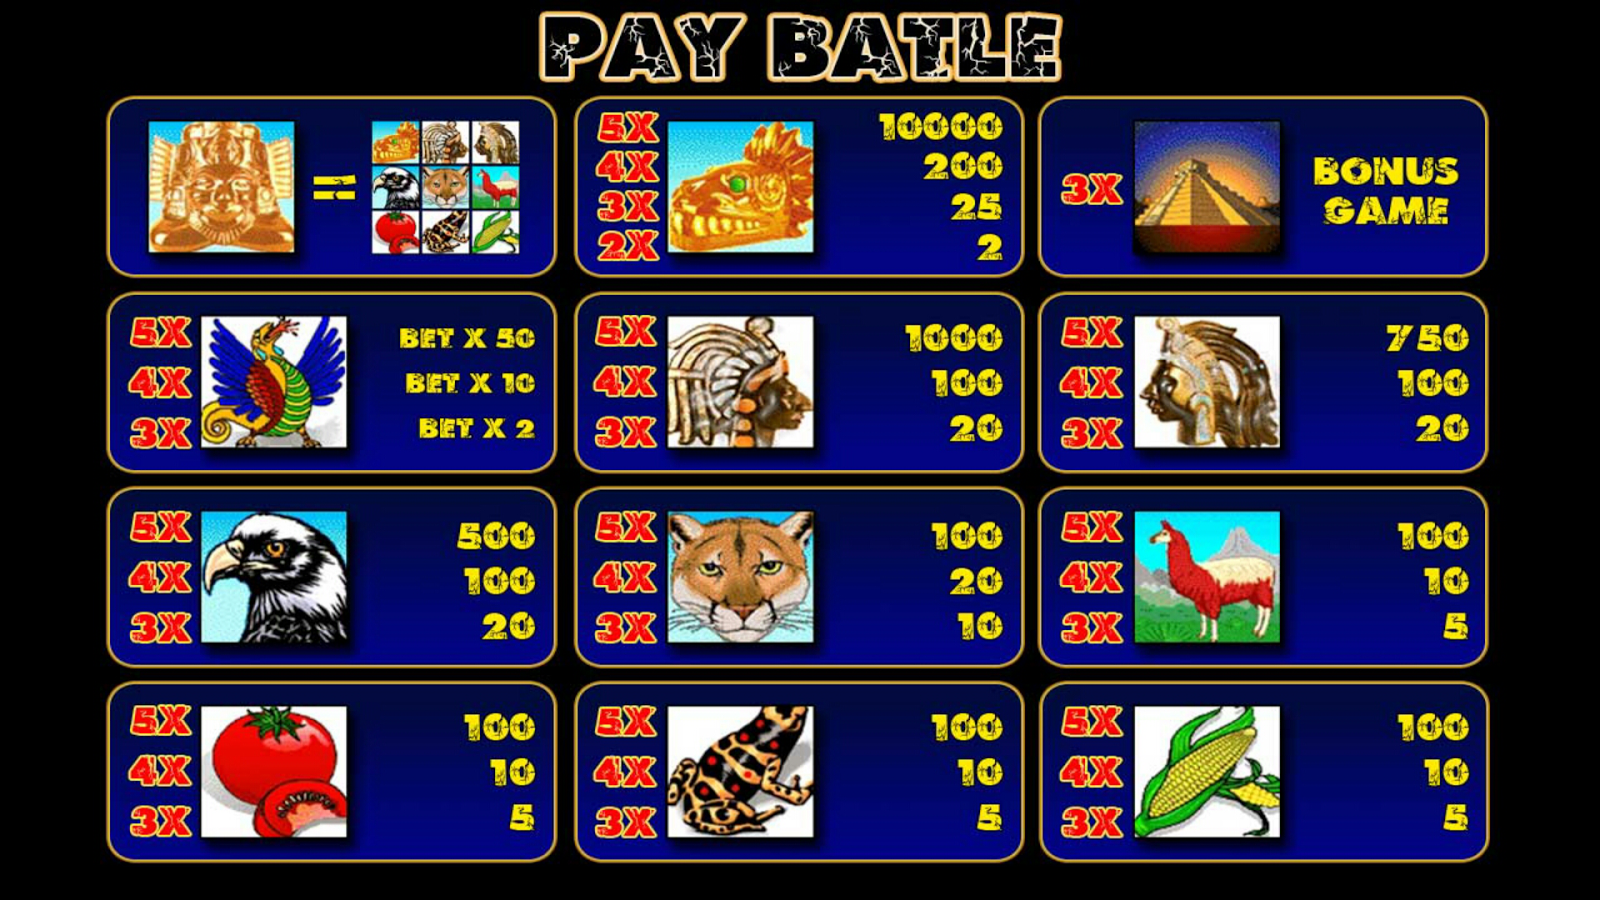 Игровые автоматы играть бесплатно пирамида на весь экран казино вход мобильная версия найти